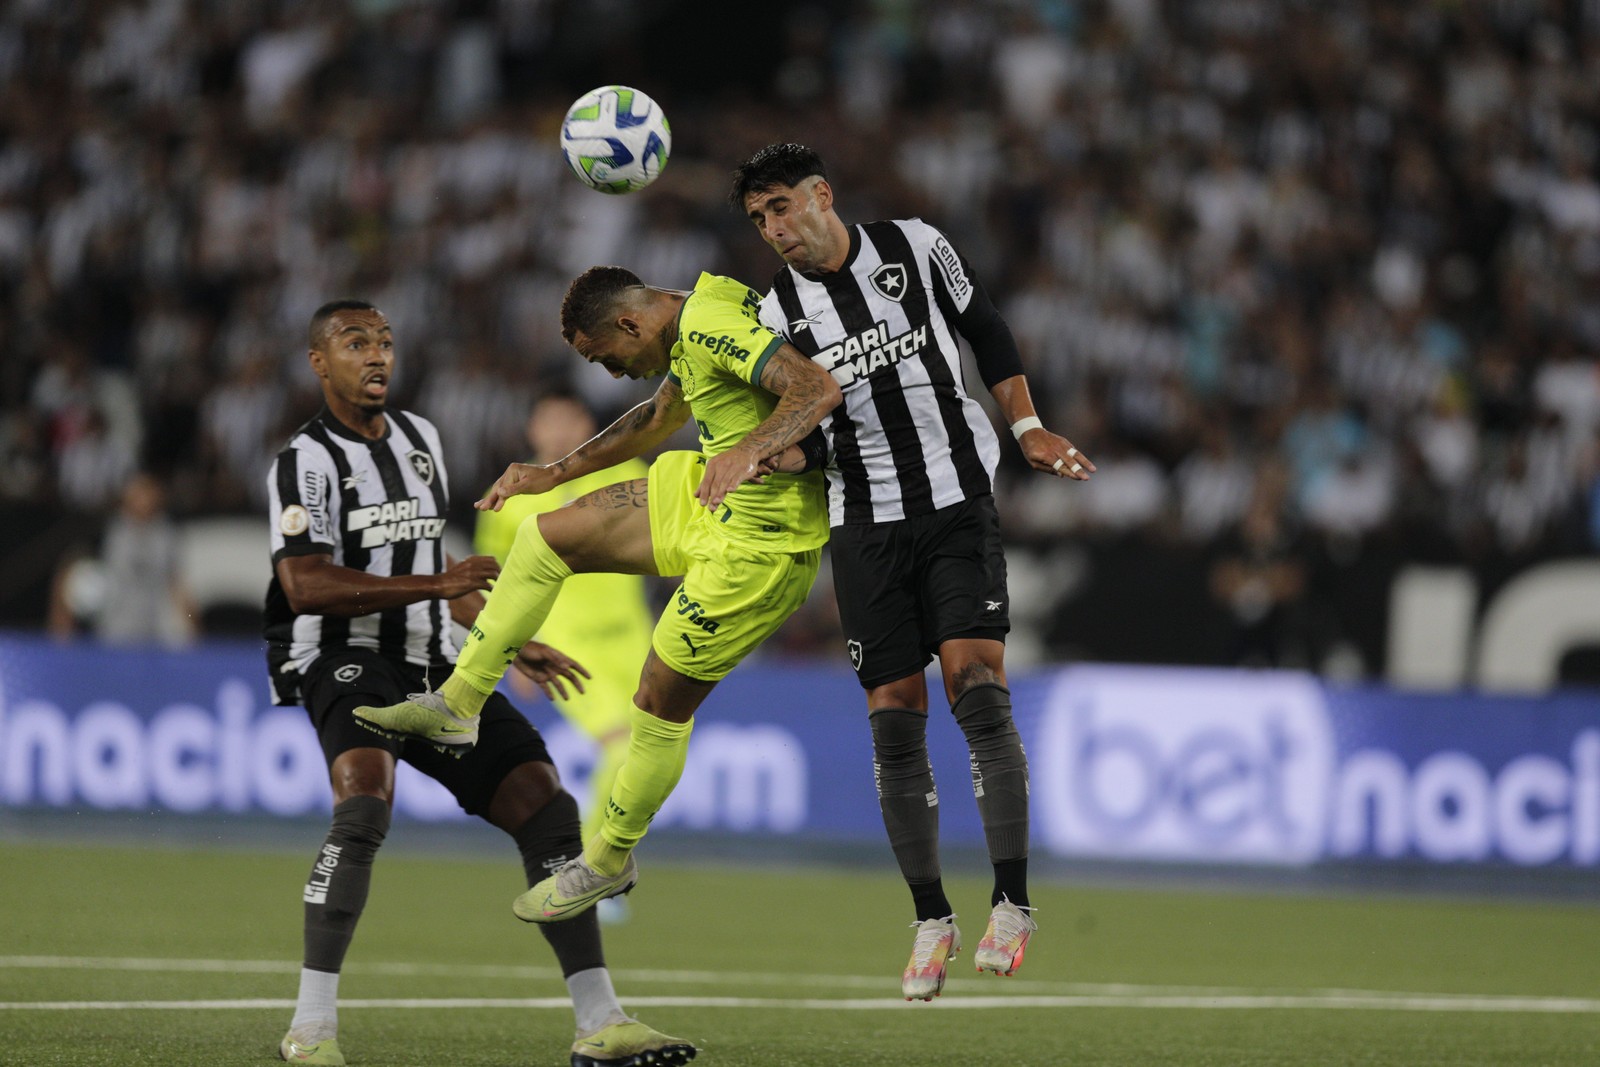 Depois, contra o Palmeiras, o Botafogo levou uma virada de 4x3 — Foto: Alexandre Cassiano/Agência O Globo